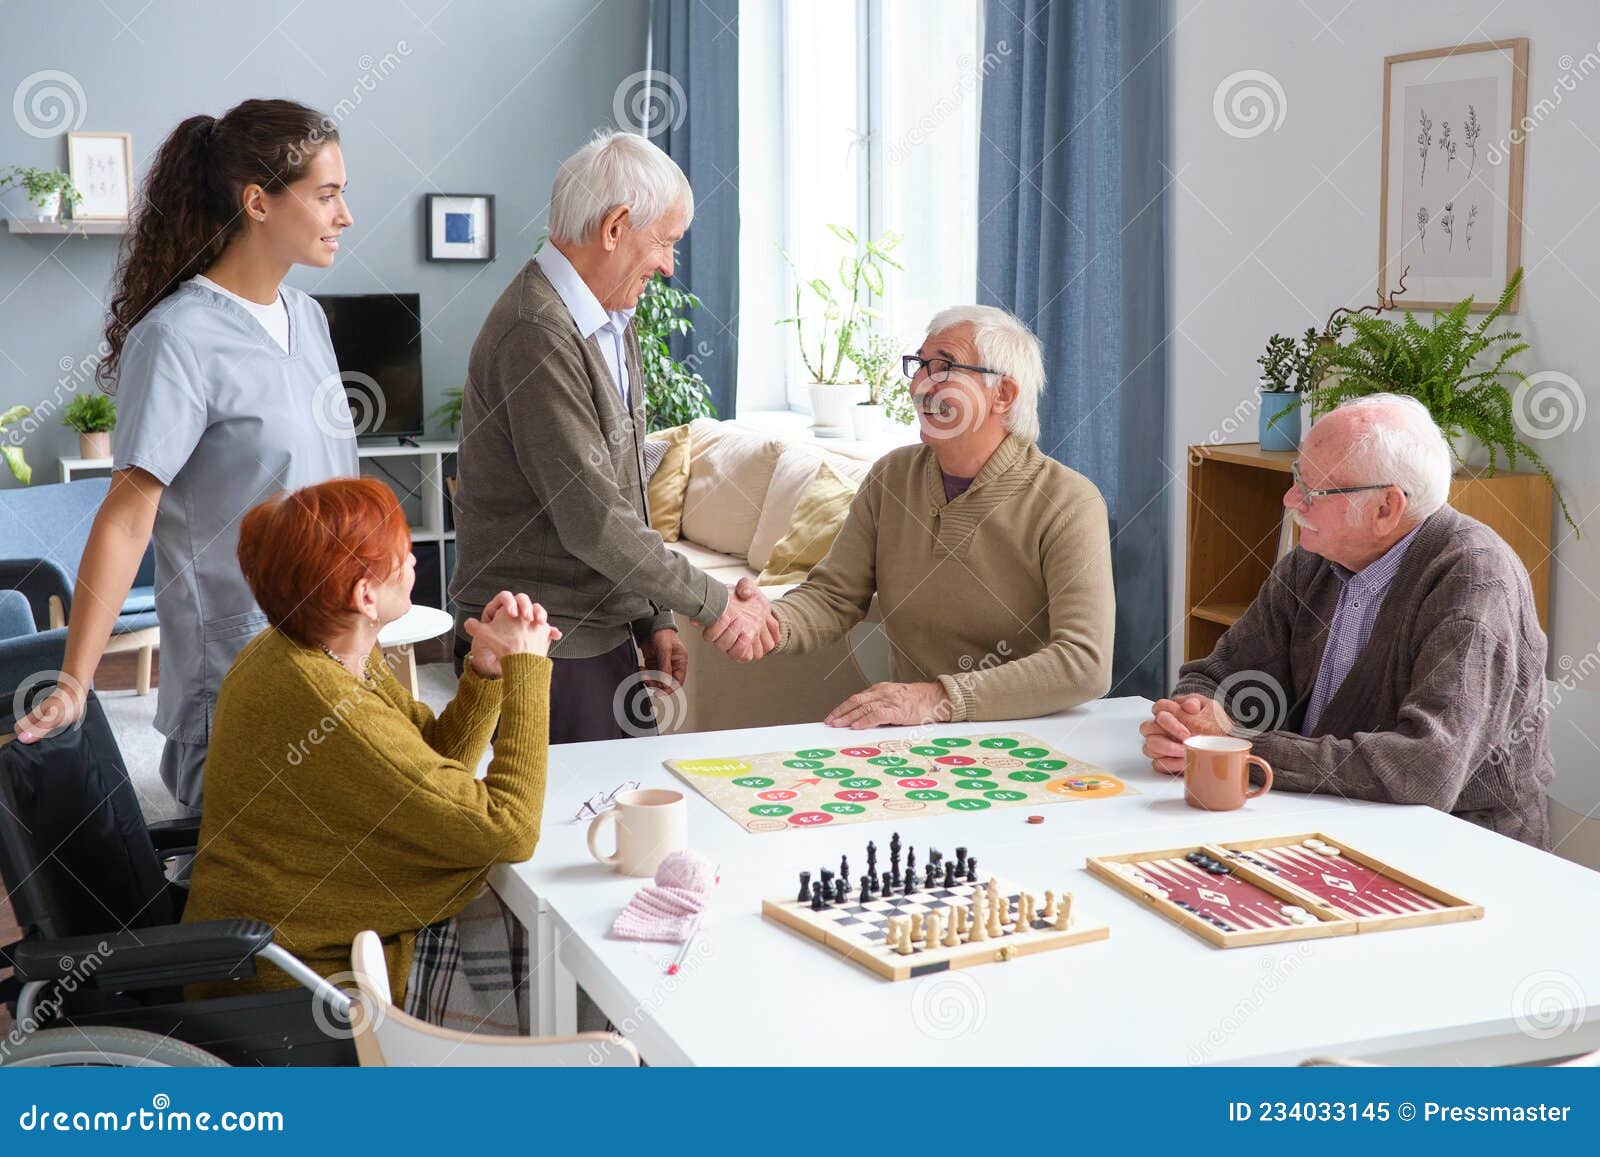 Grupo de amigos que gosta de jogar videogame em casa se reunindo